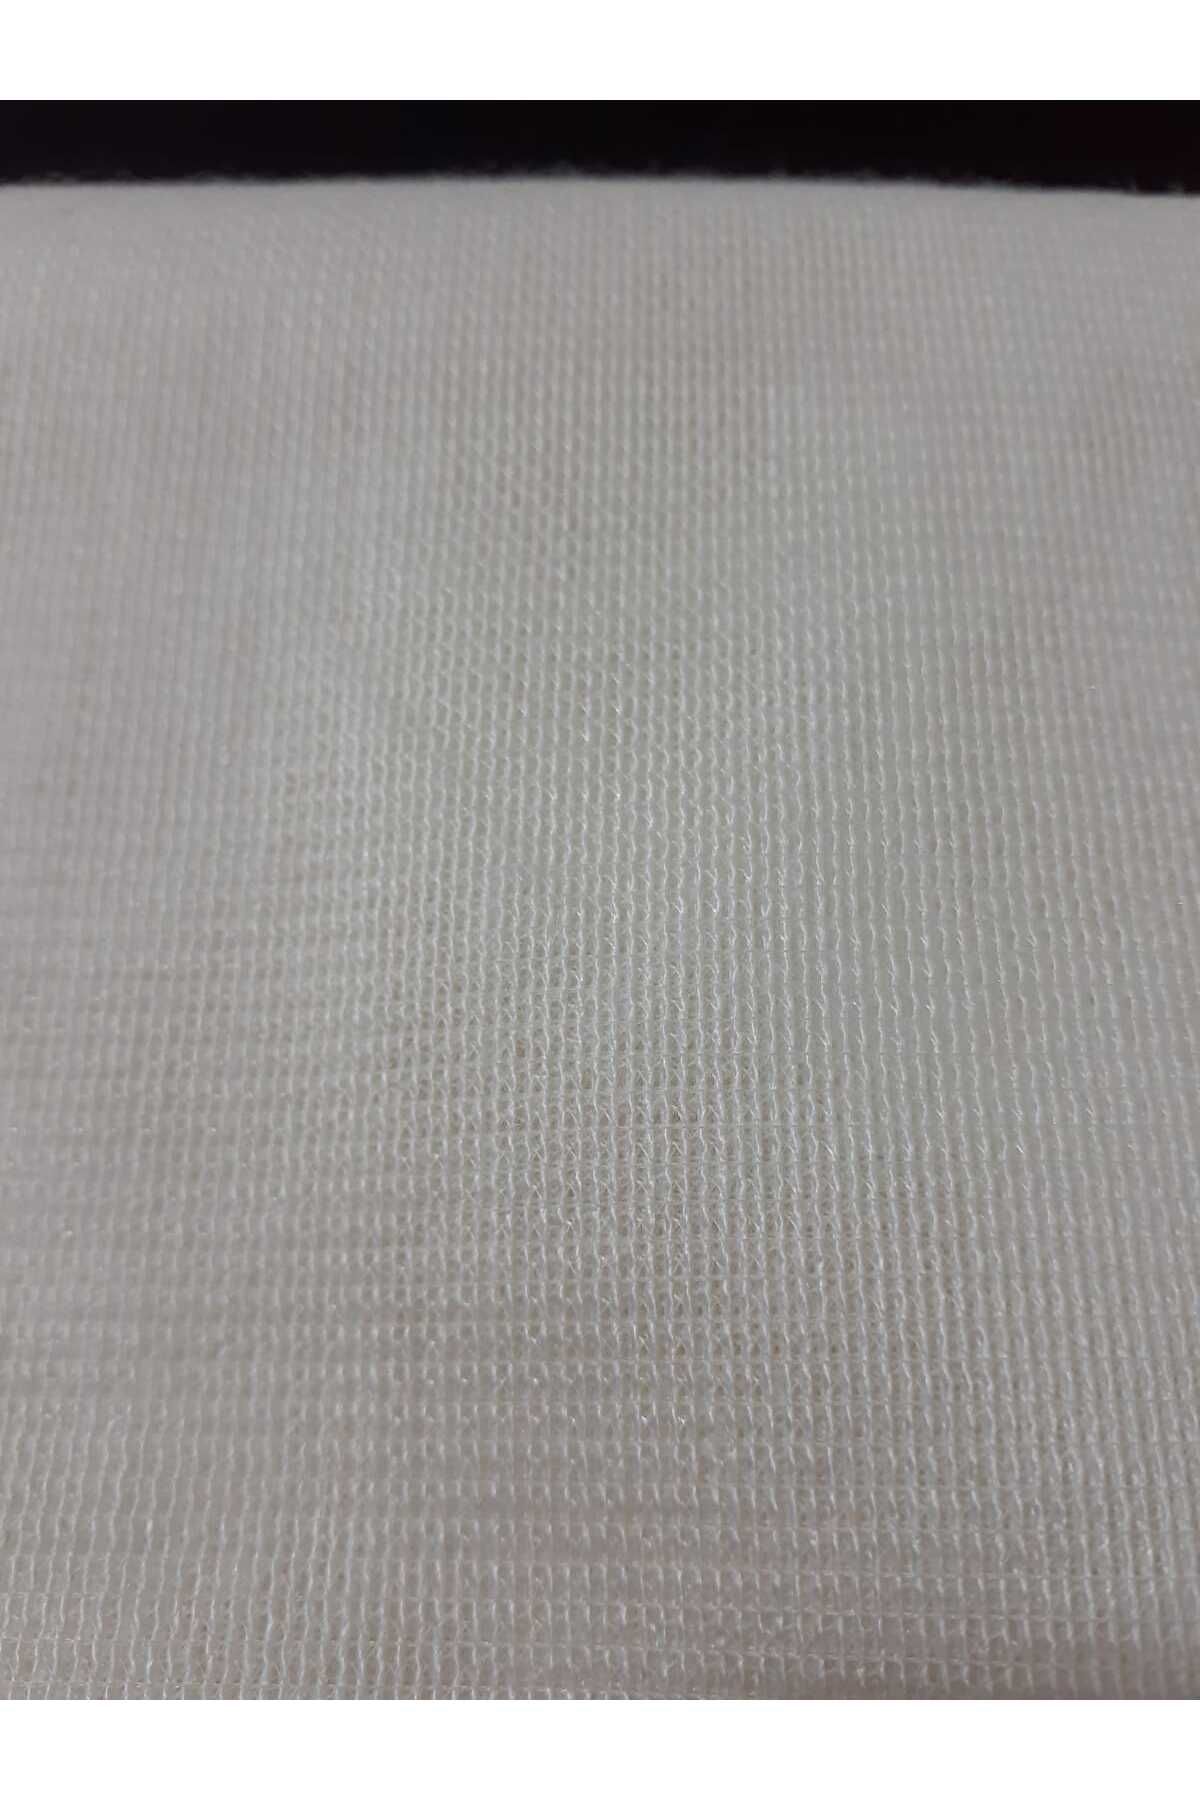 Stil Adventure Raşel Tela her türlü kalın ve orta kalınlıktaki kumaşlarda kullanılır. (150 x 100)